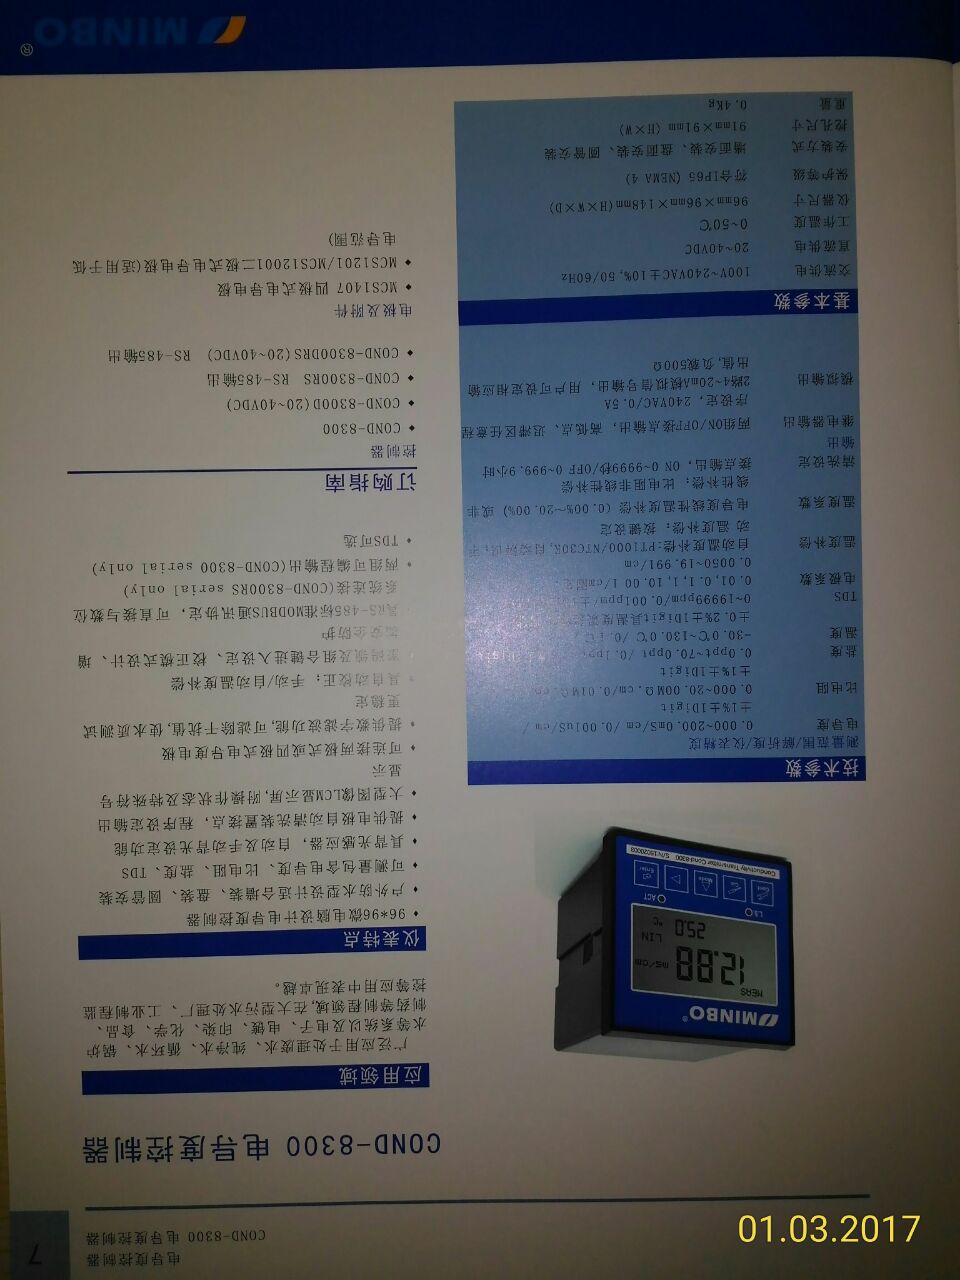 在线浊度仪 TURB-1200 微电脑浊度变送器  台湾MINBO仪器产品